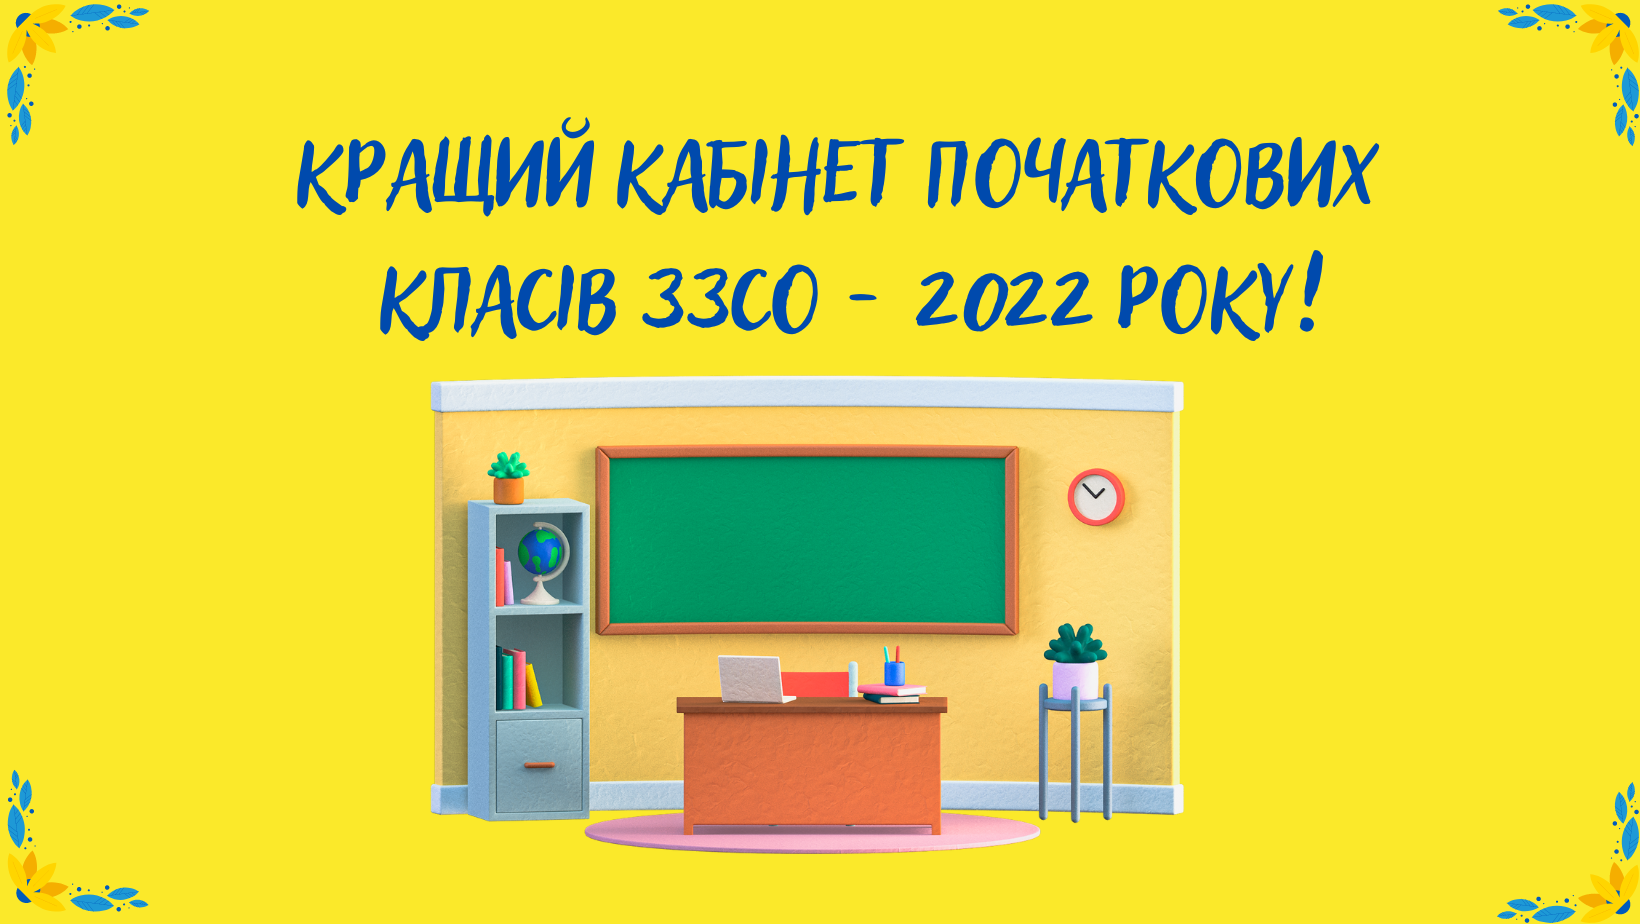 Кращий кабінет початкових класів ЗСО - 2022 року